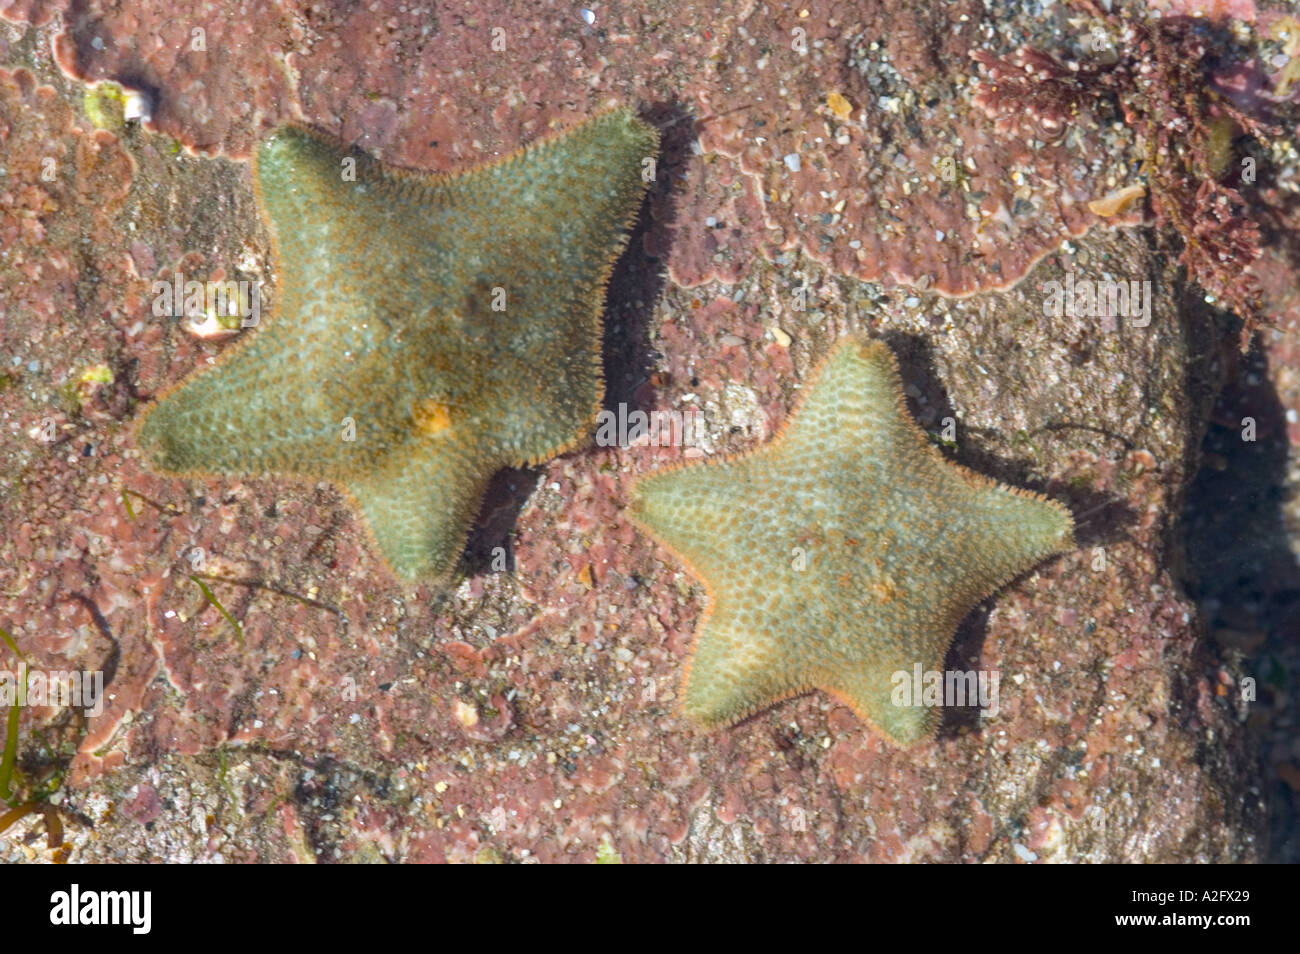 Devon Wildlife Trust Wembury Voluntary Marine reserve Cushion starfish Asterina gibbosa Stock Photo